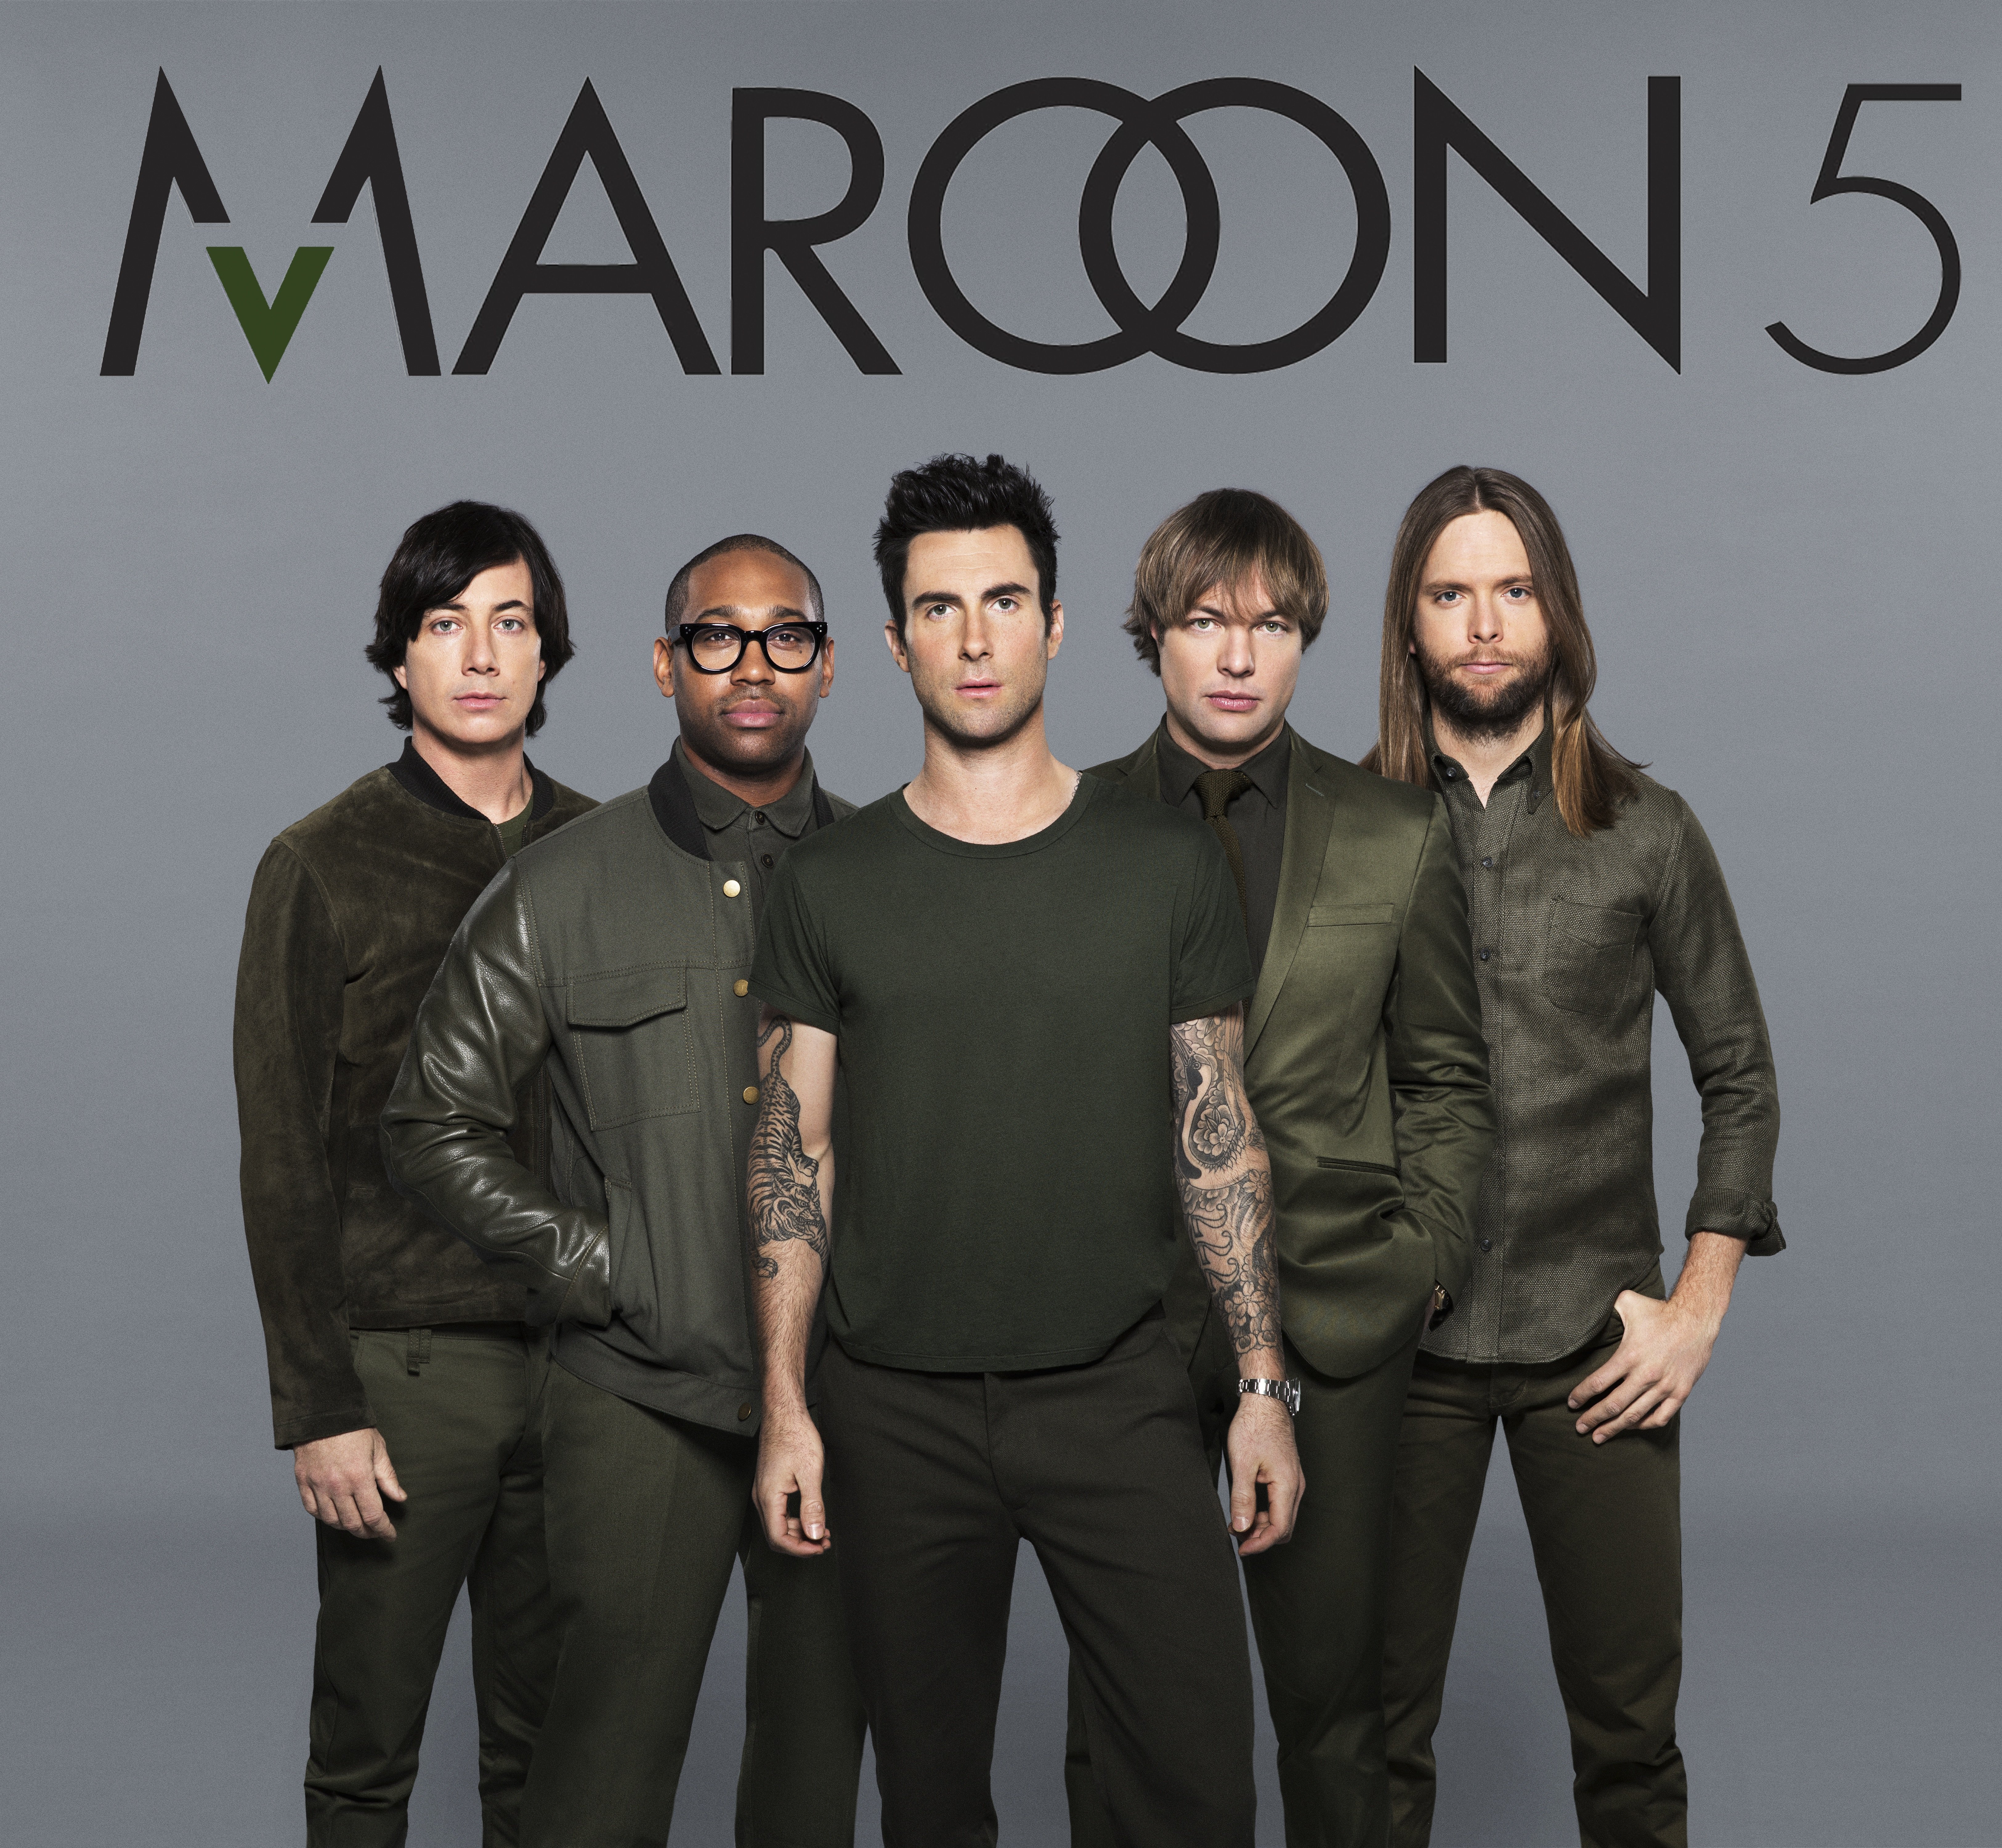 Марон 5 песни. Группа мароон 5. Группа марун Файв. Марун 5 2021. Maroon 5 фото группы.